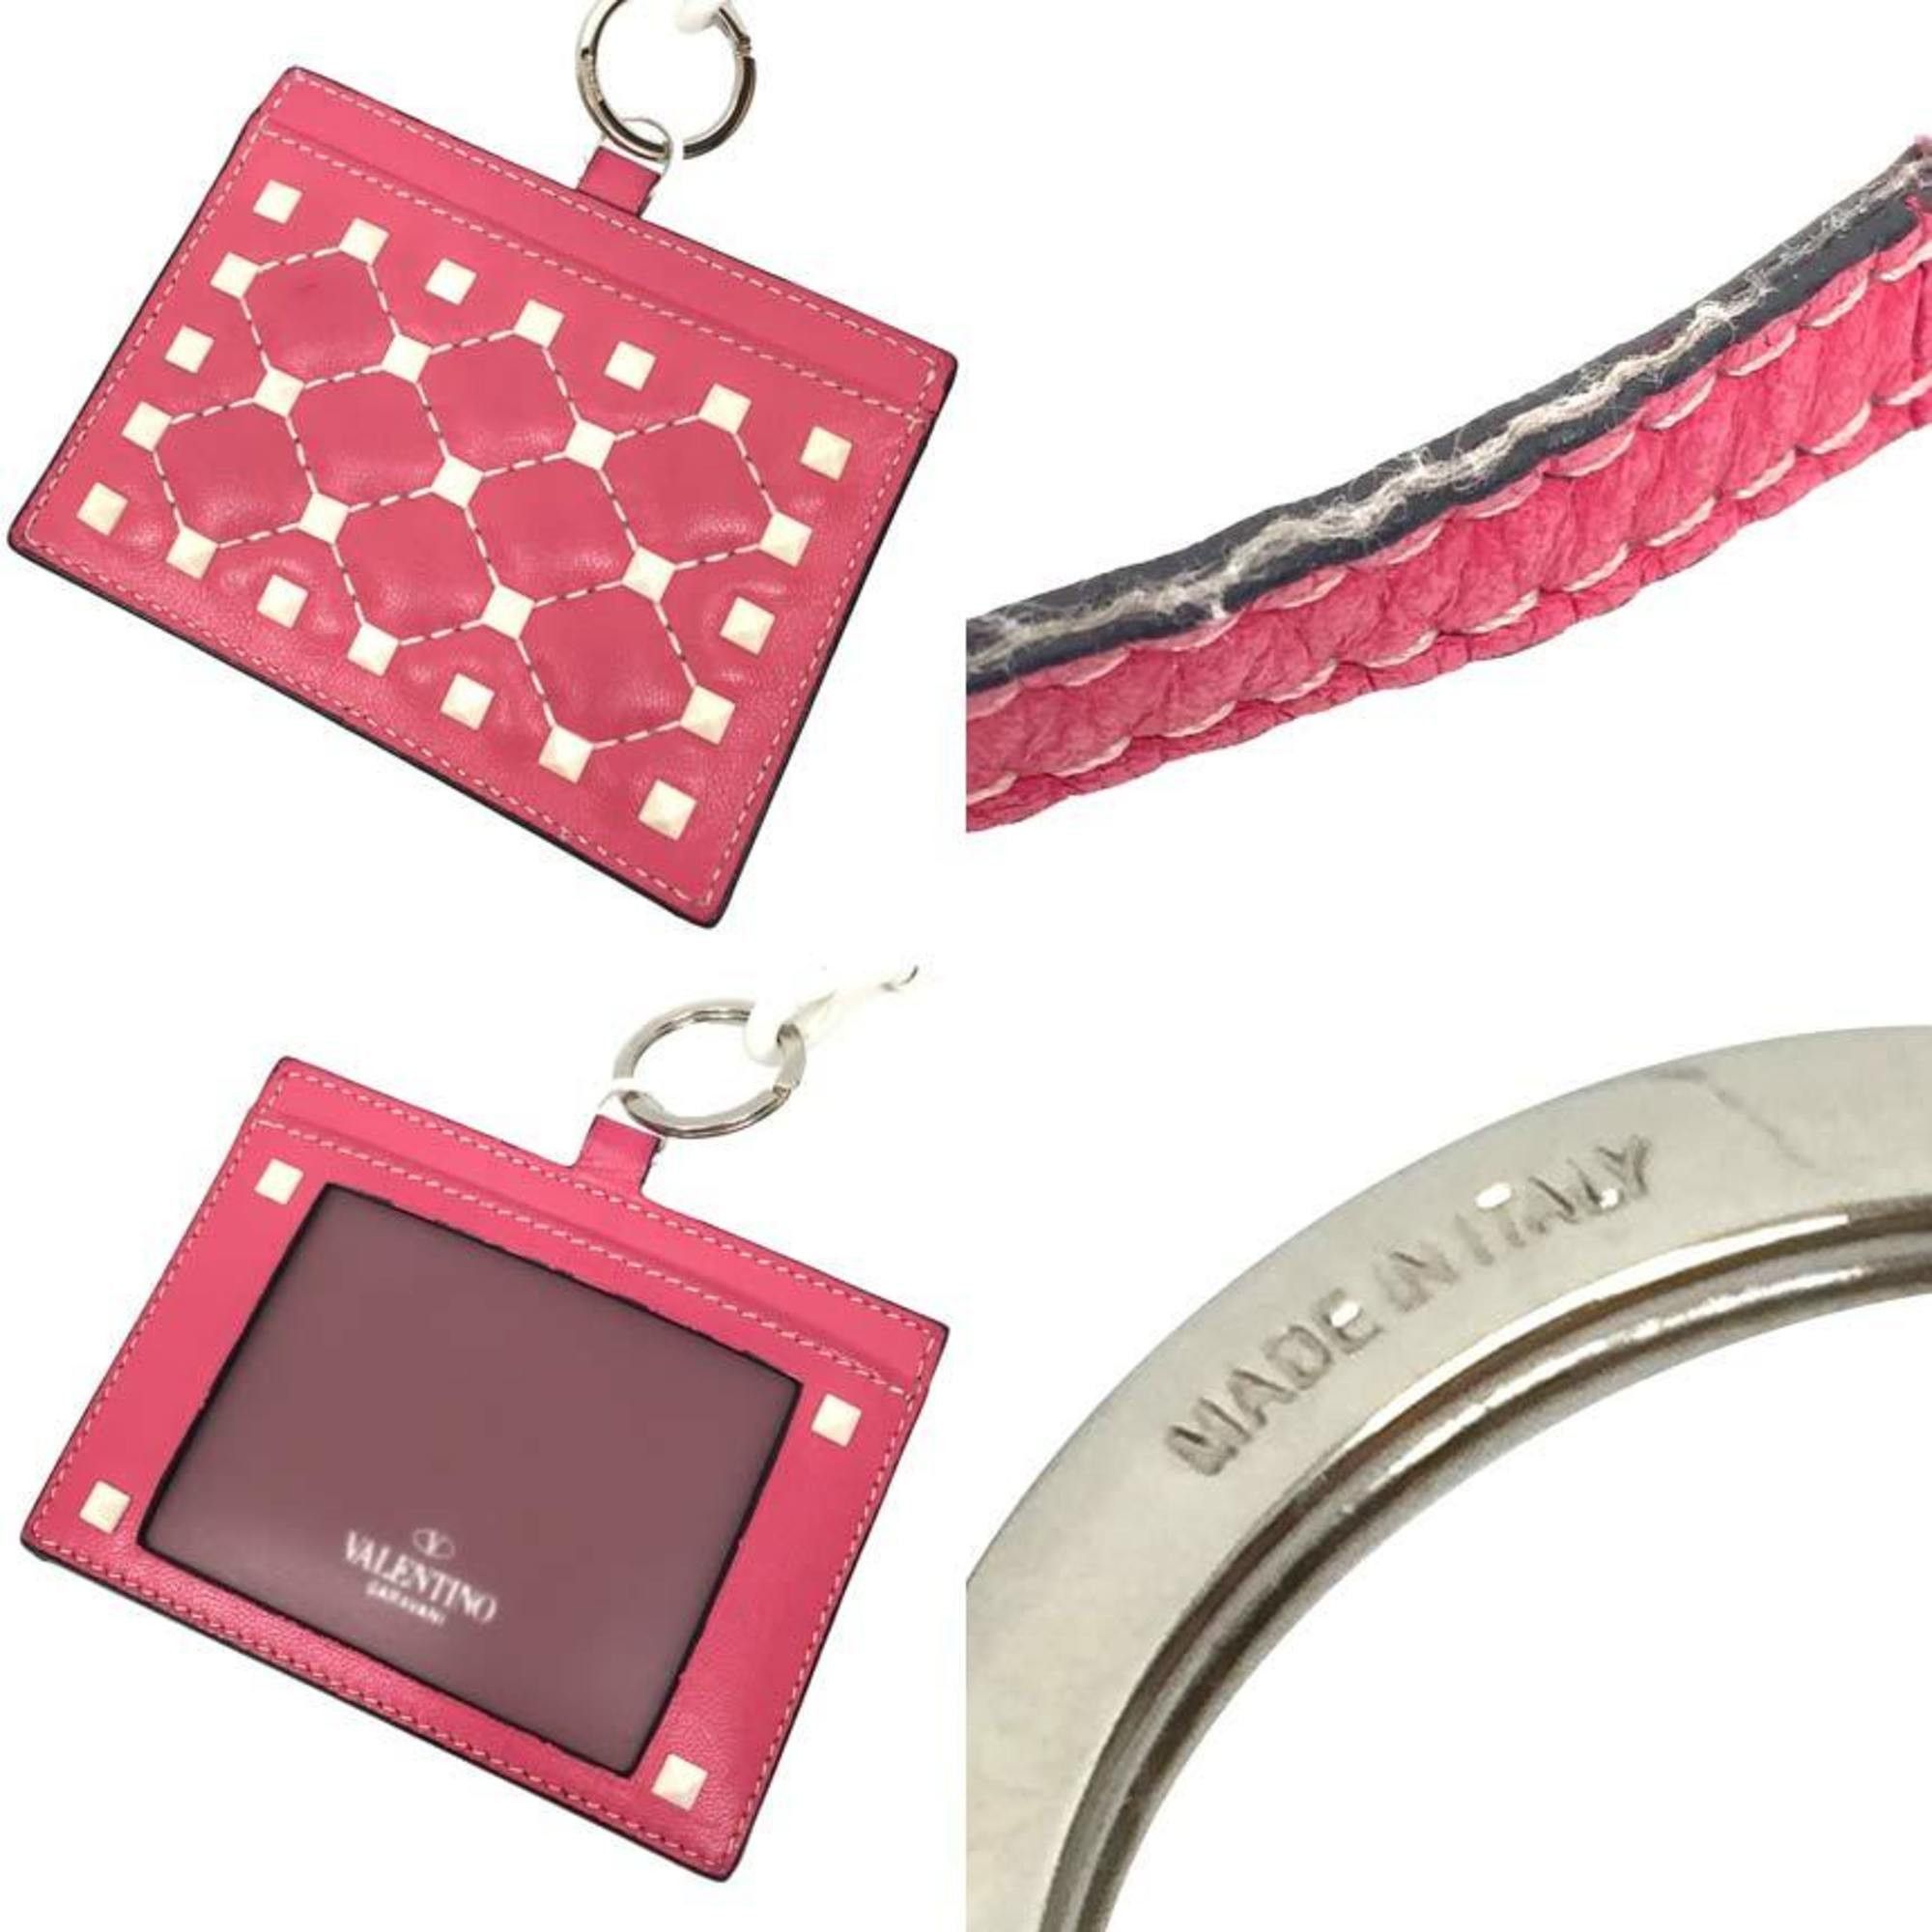 Valentino Garavani Valentino Garavani Card Case Rockstud PW2P0Q01 Pink White Leather Holder Neck Strap Pass Stitch Quilting Wallet Size ONE SIZE - 3 Preview